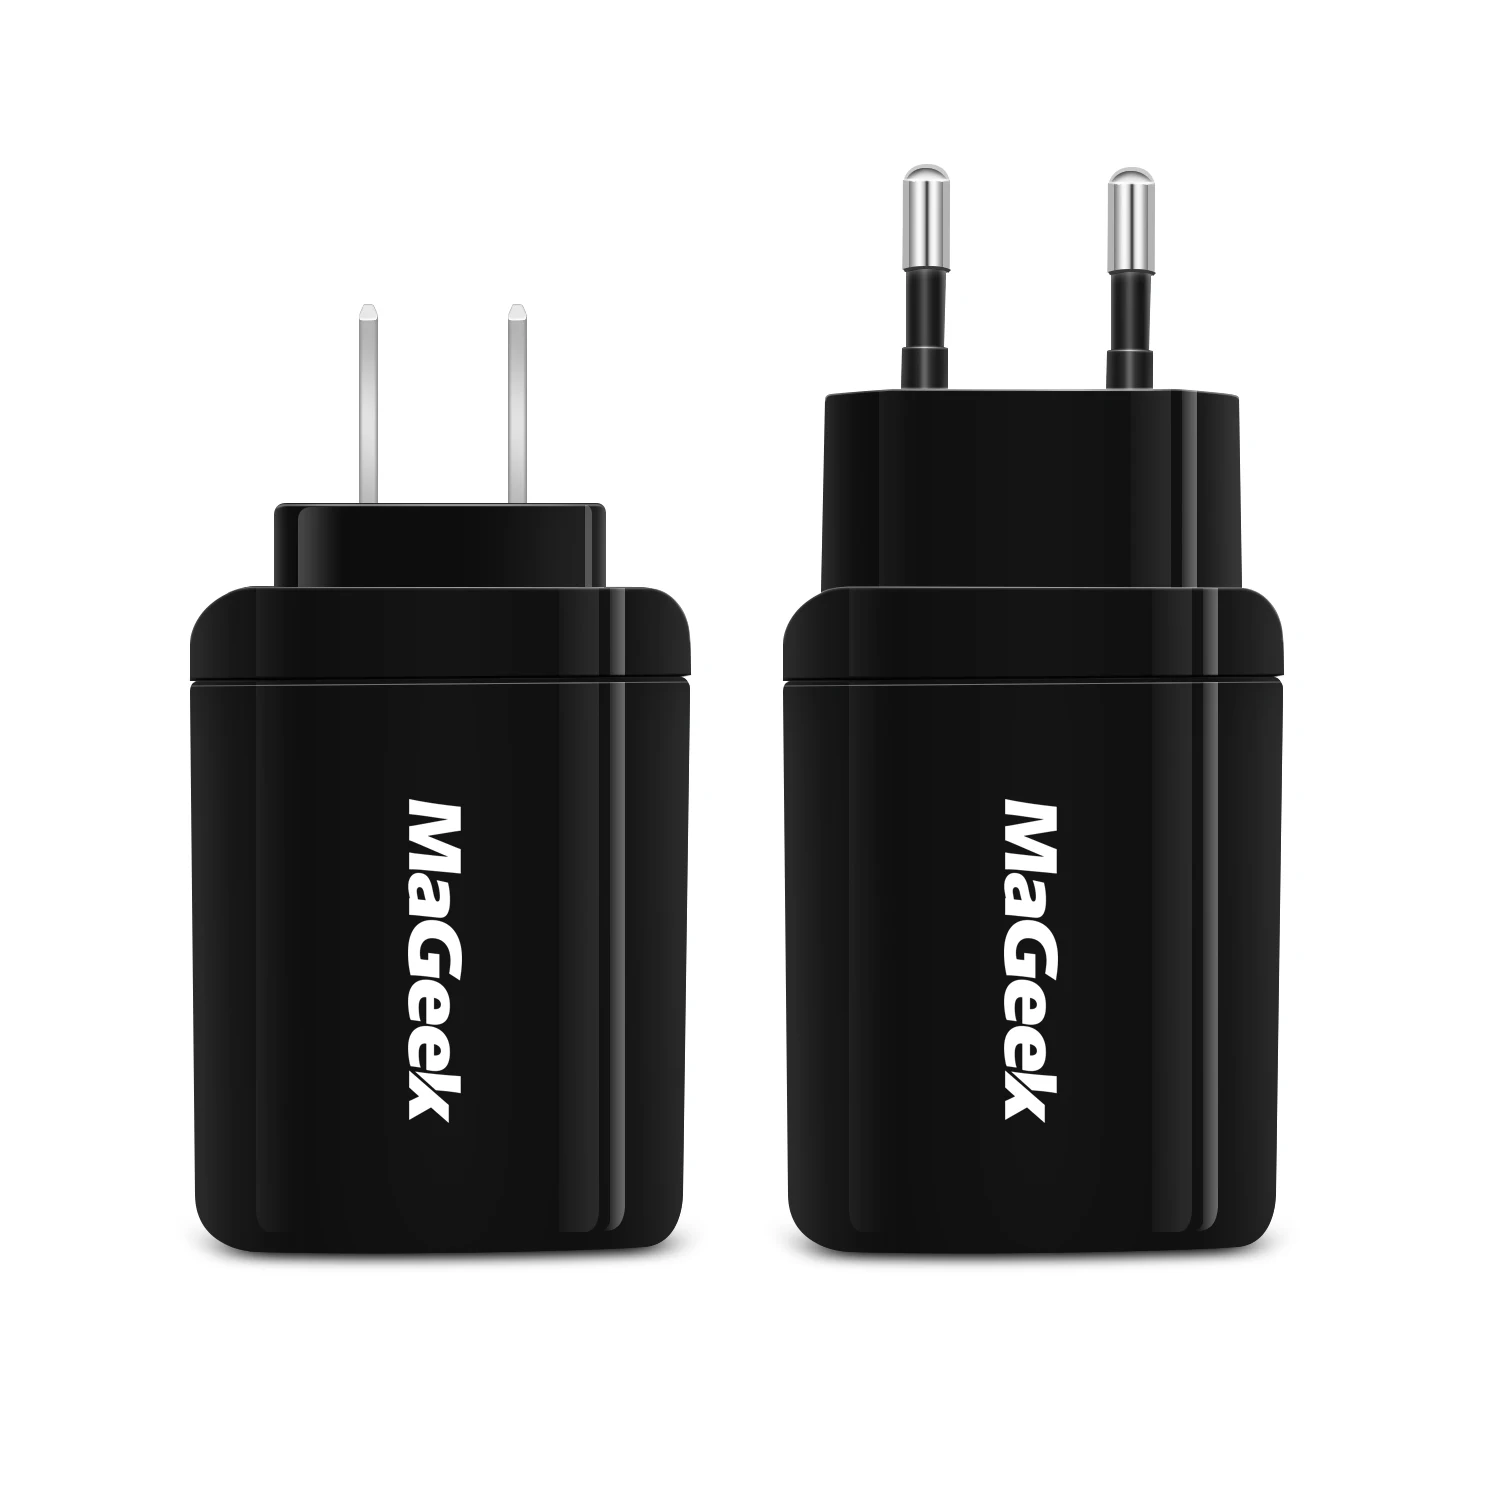 MaGeek 5V2. 4A двойной USB зарядное устройство Быстрая зарядка для телефона портативное зарядное устройство для iPhone зарядное устройство